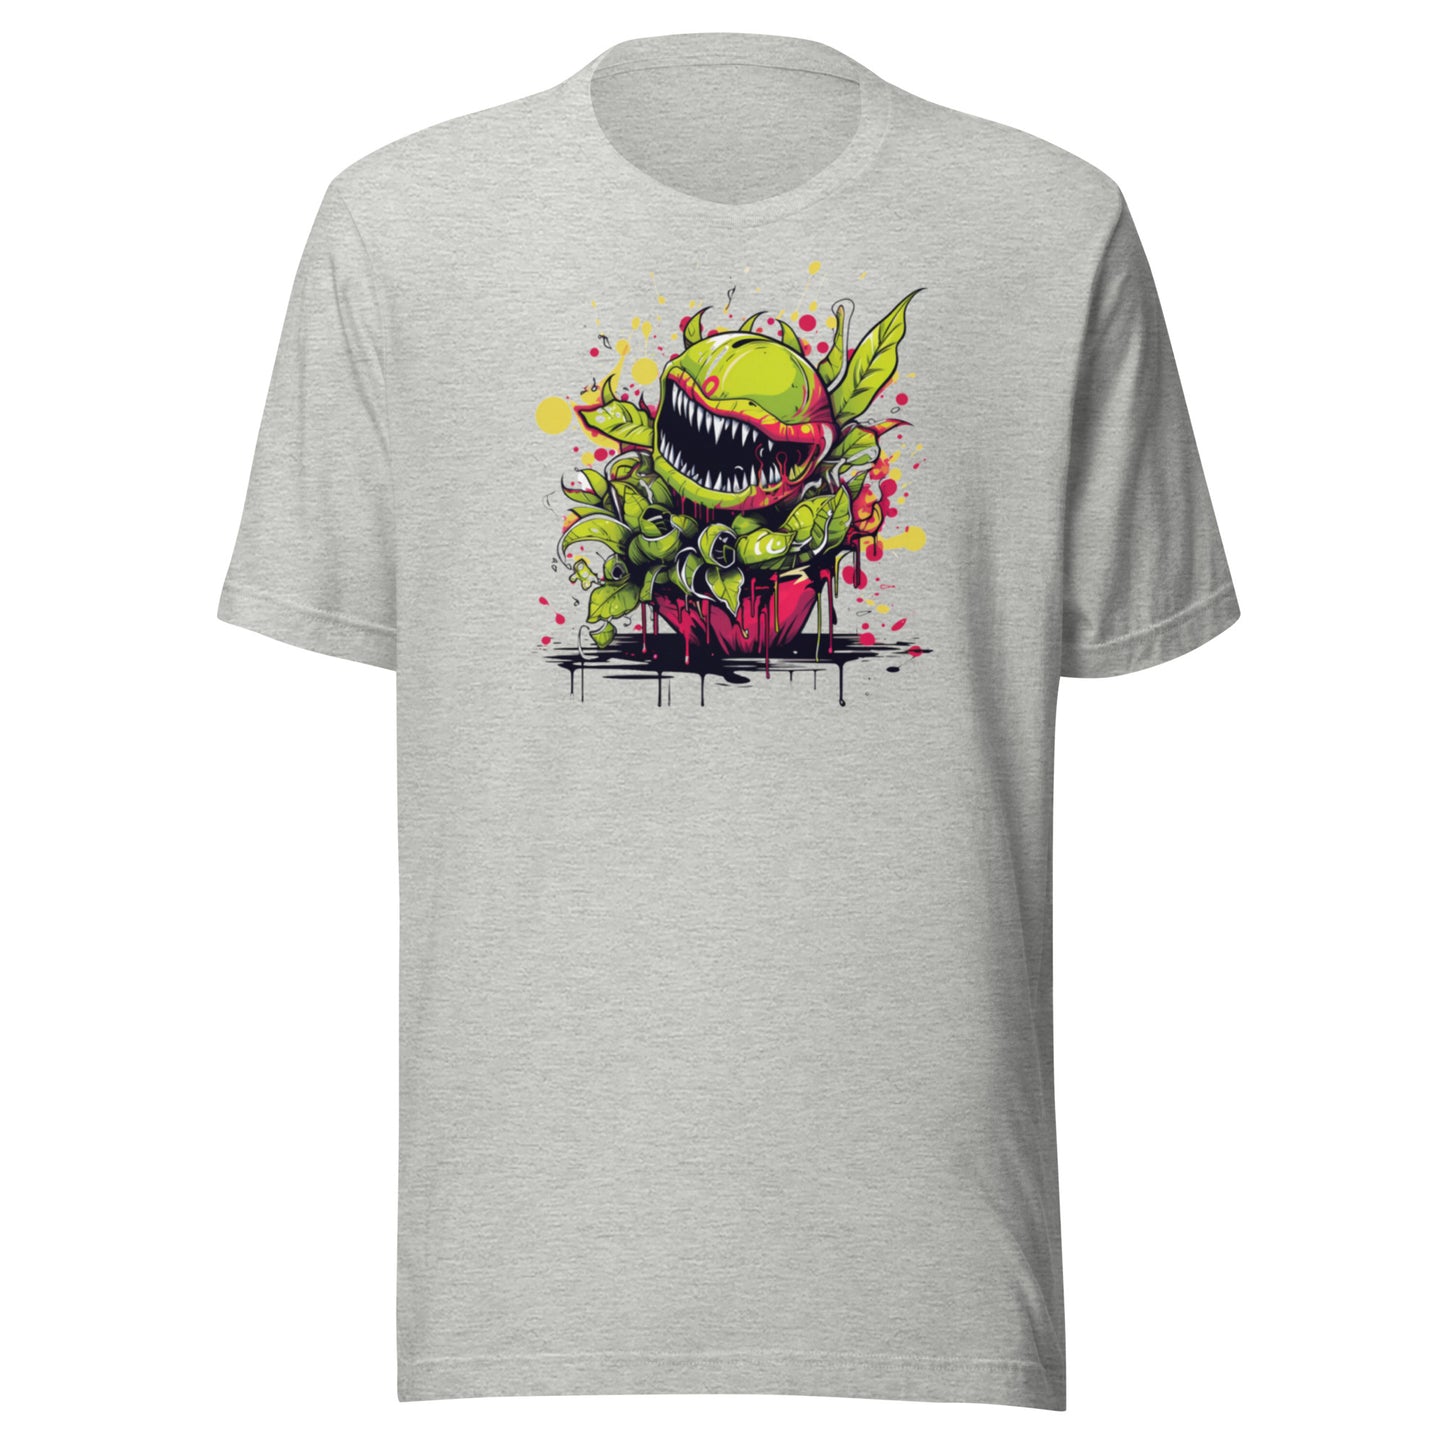 Little Shop of Horror Shirt, Movie shirt, Halloween Shirt, Horror Tee, Graphic t shirt